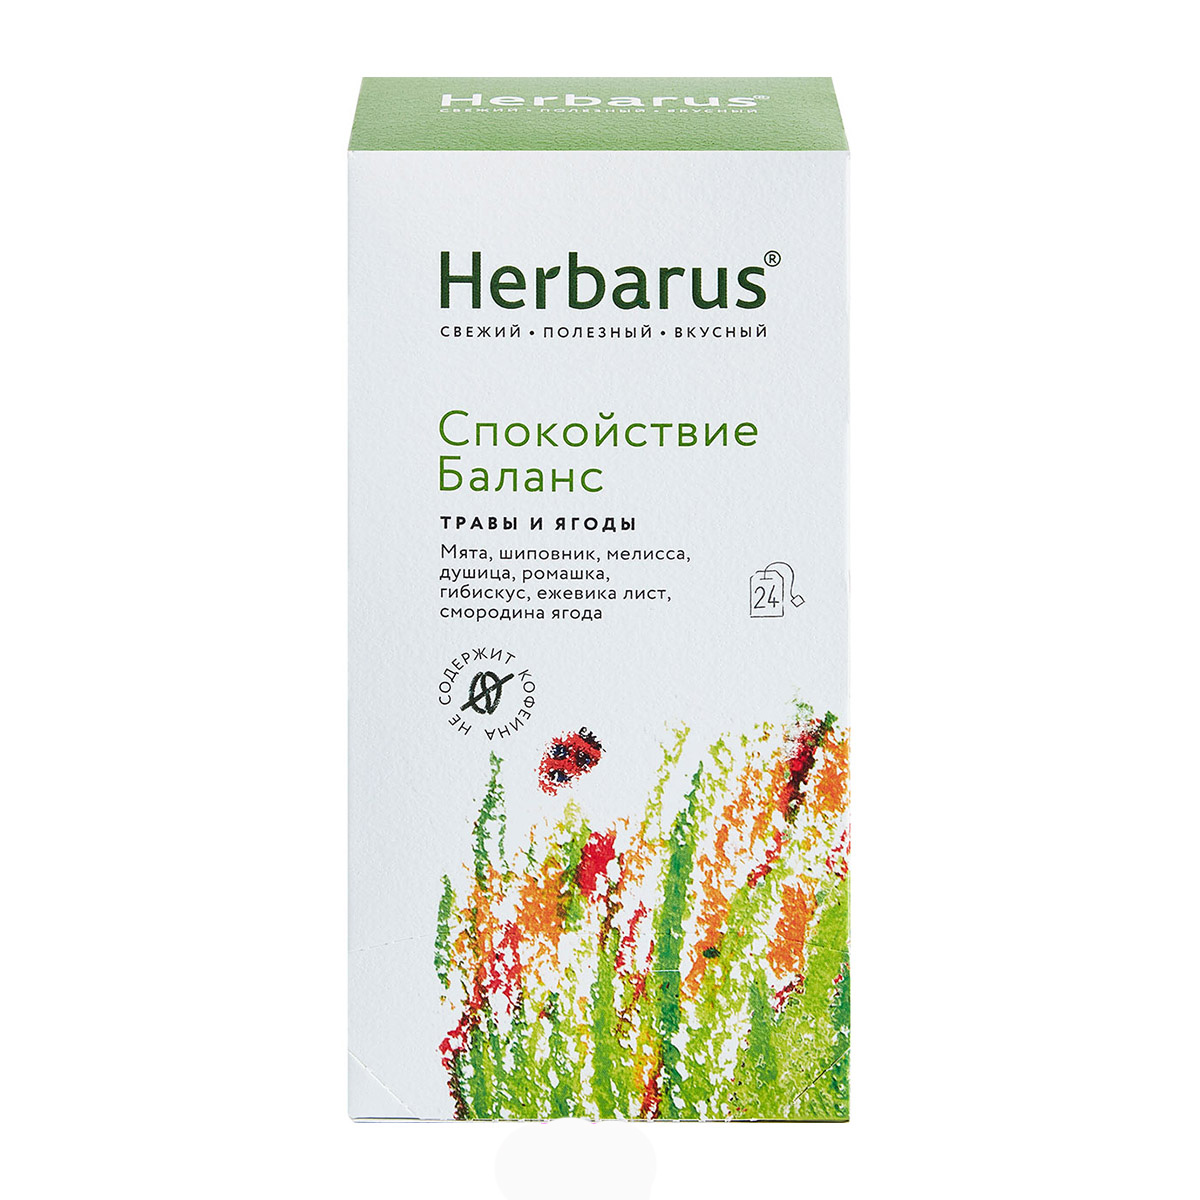 Herbarus Чайный напиток Спокойствие и баланс, 24 шт х 1,8 г (Herbarus, Травы и ягоды) чайный напиток травяной herbarus спокойствие баланс 24×1 8 г